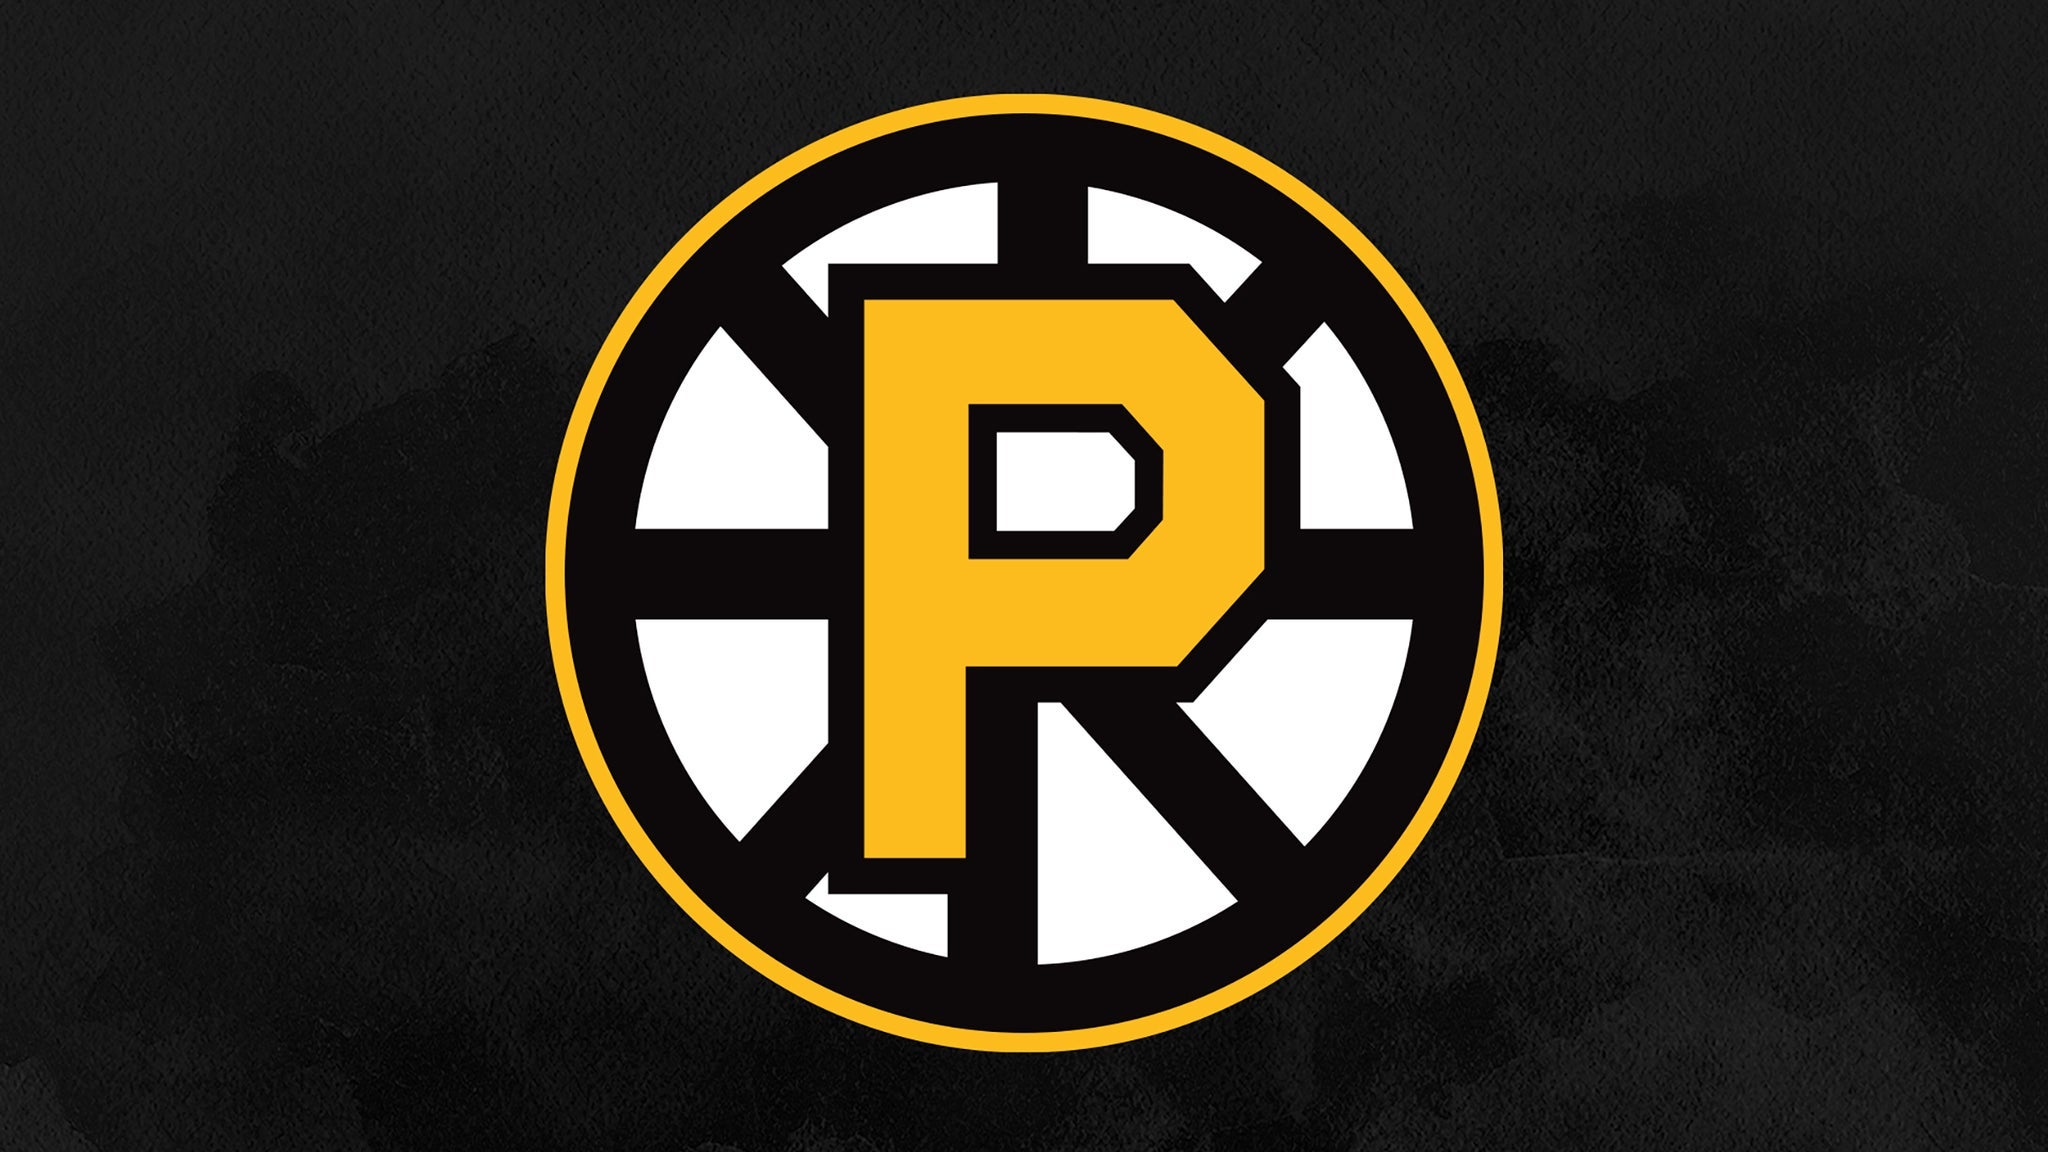 Providence Bruins vs. Rochester Americans - Providence, RI 02903